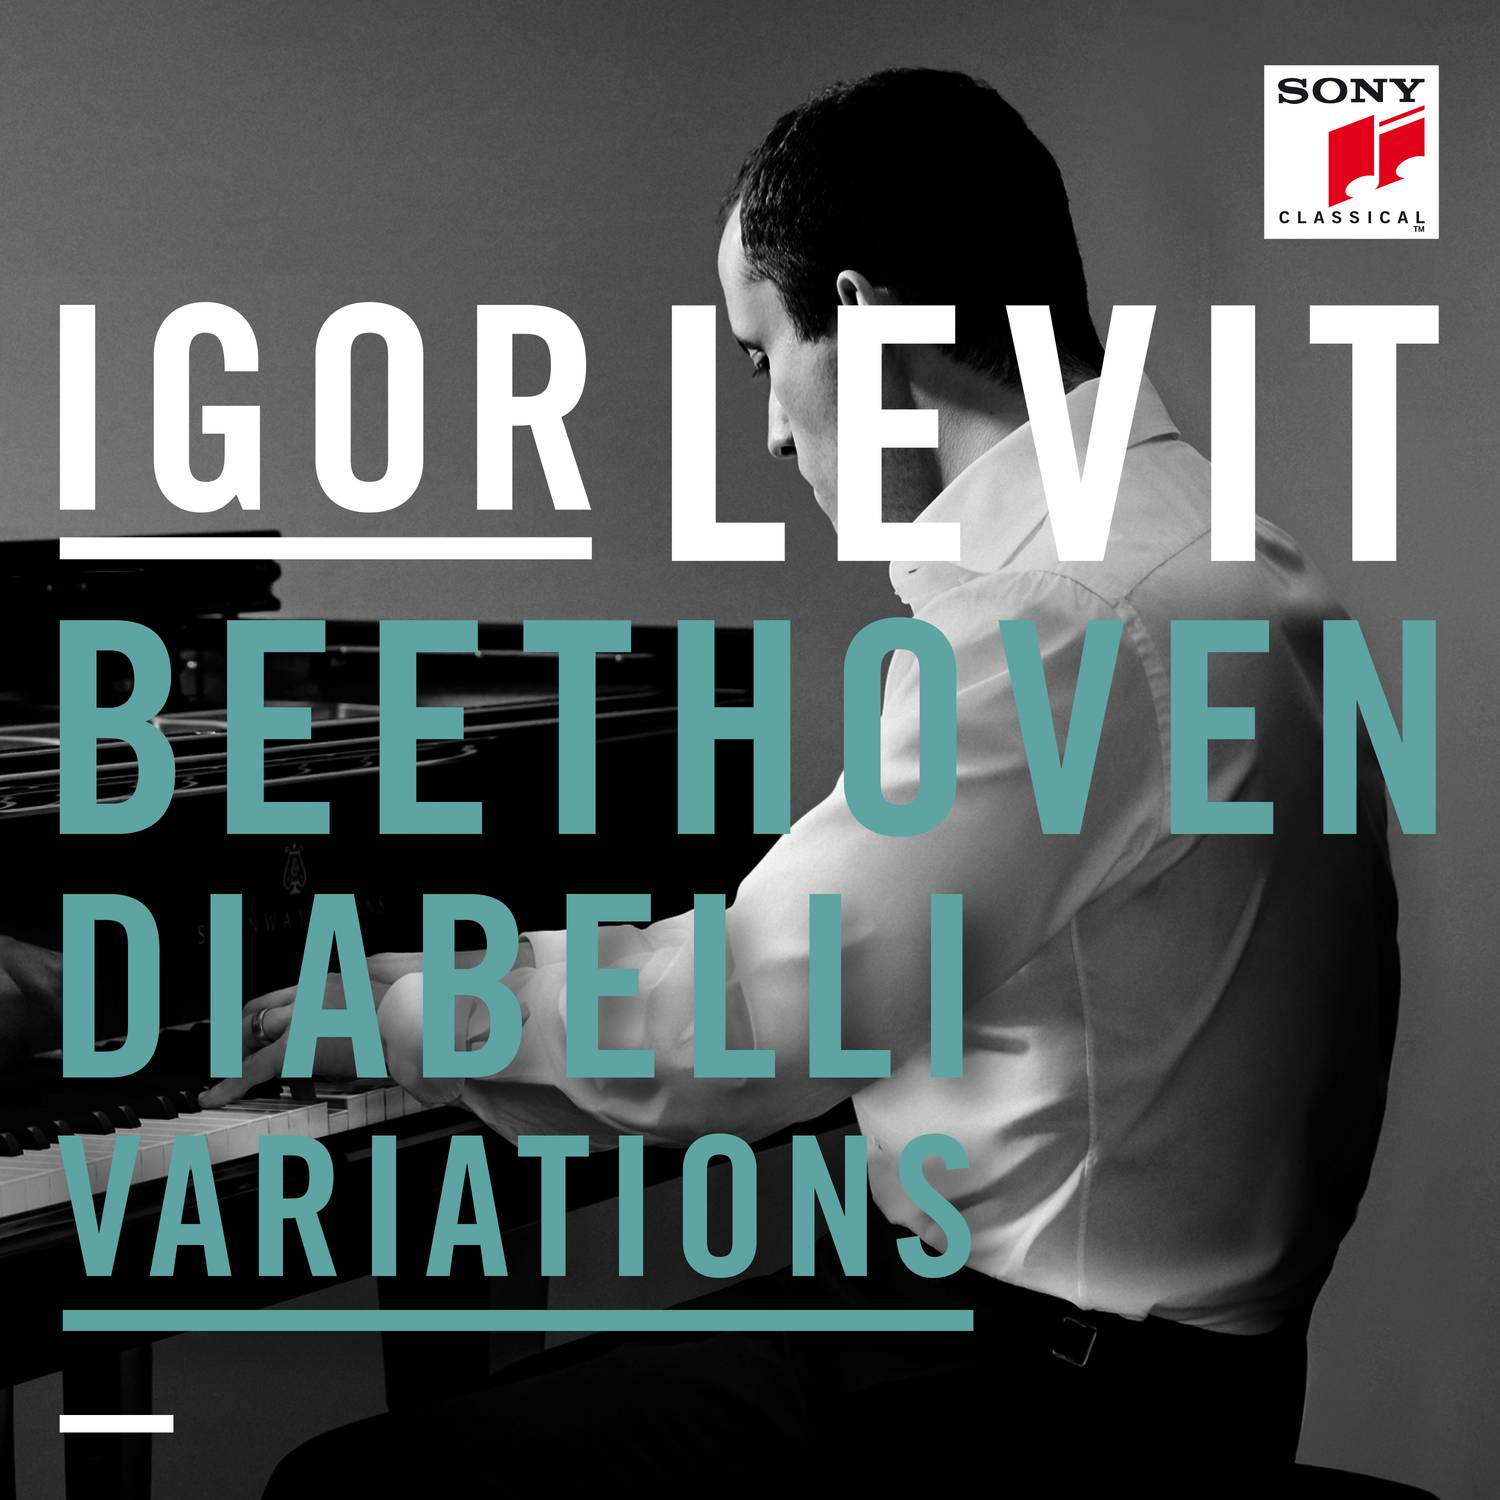 Diabelli Variations - 33 Variations on a Waltz by Anton Diabelli, Op. 120:Var. 2 - Poco allegro